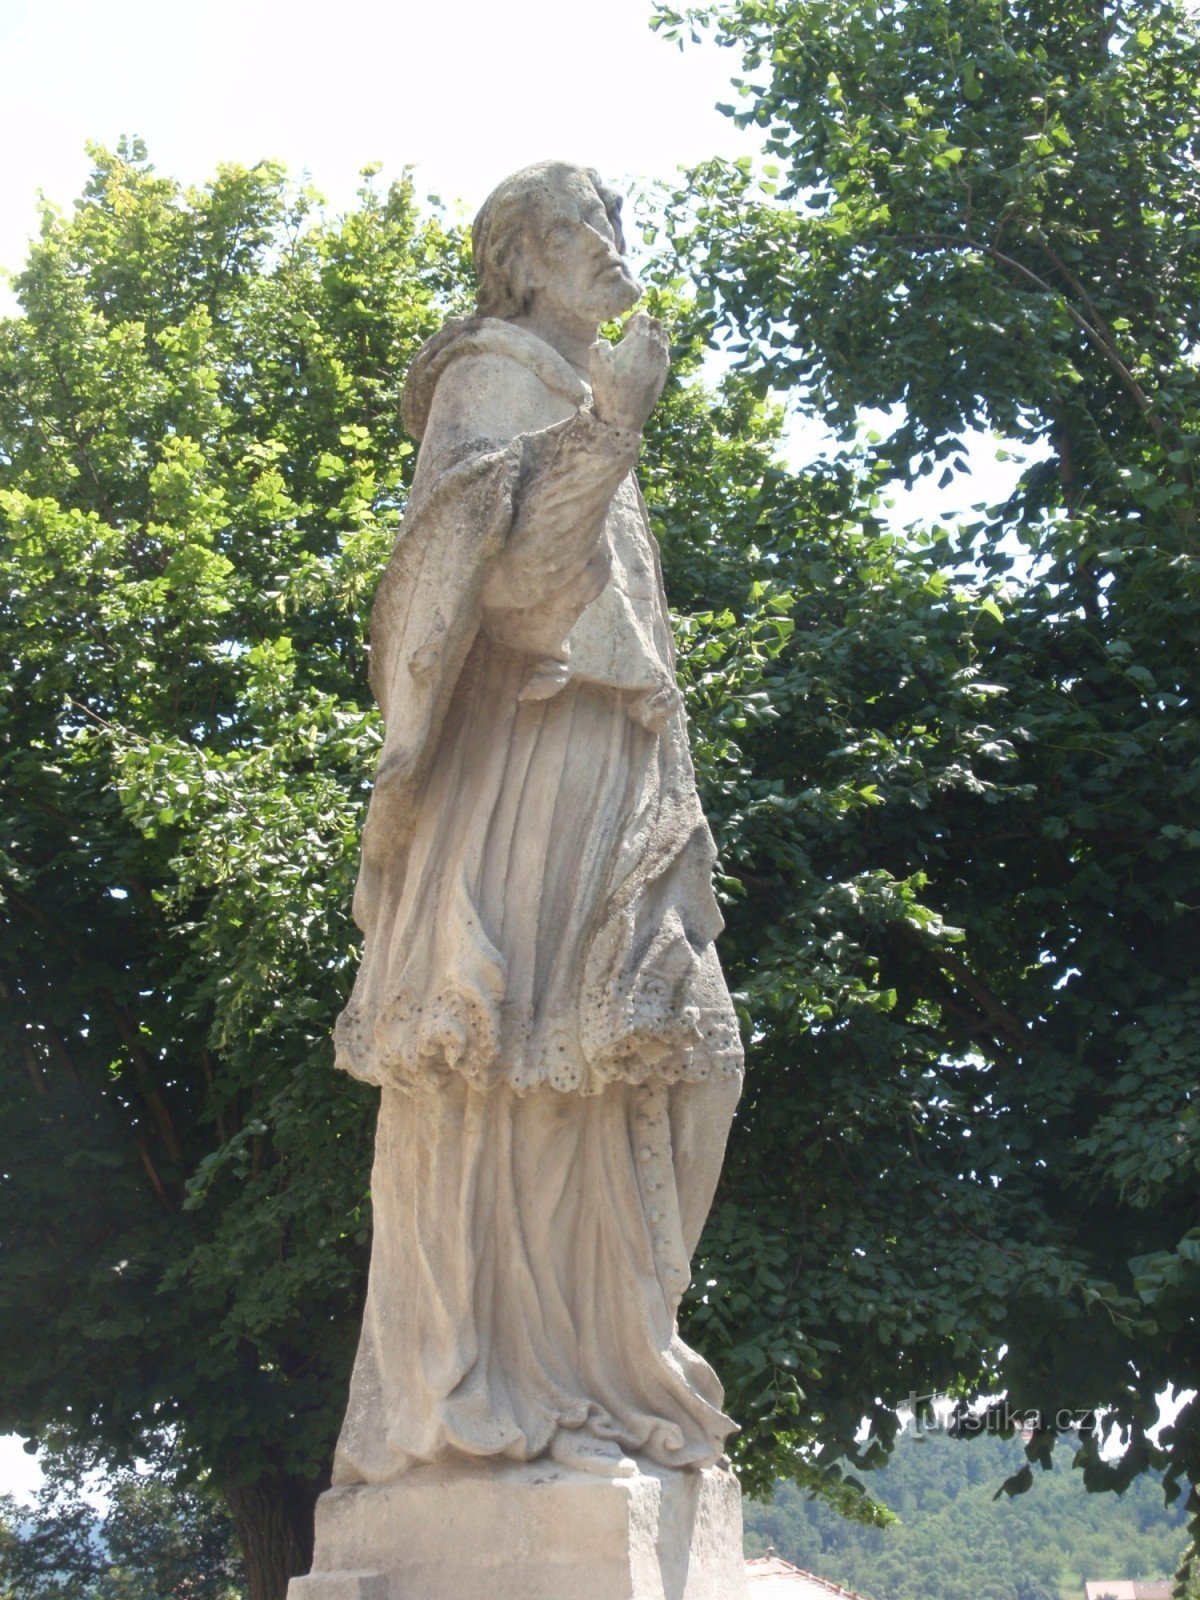 Τα αγάλματα του Αγίου Ιωάννη στο Rosice